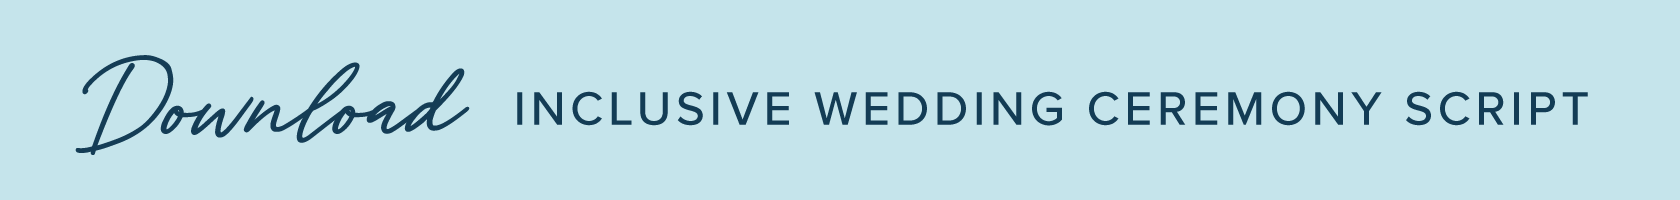 inclusive-wedding-ceremony-script-button